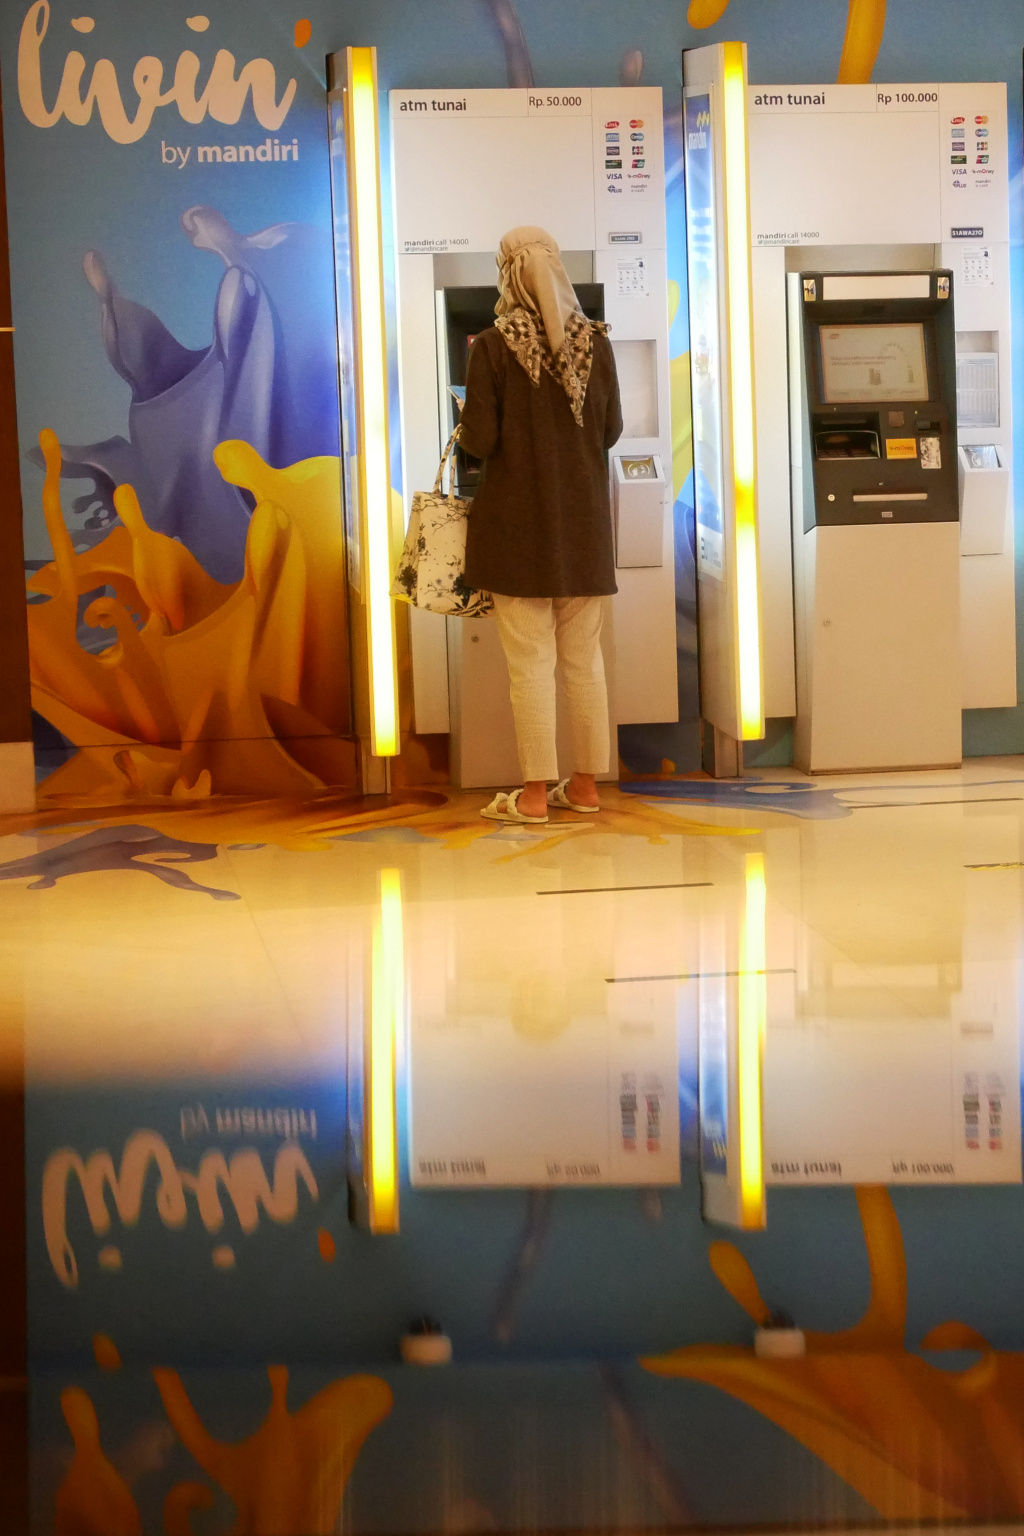 Nasabah melakukan transaksi dengan mesin ATM berlogo Livin' by Mandiri di kantor Cabang Bank Mandiri, Jakarta, Jum'at, 21 Januari 2022. Foto: Ismail Pohan/TrenAsia